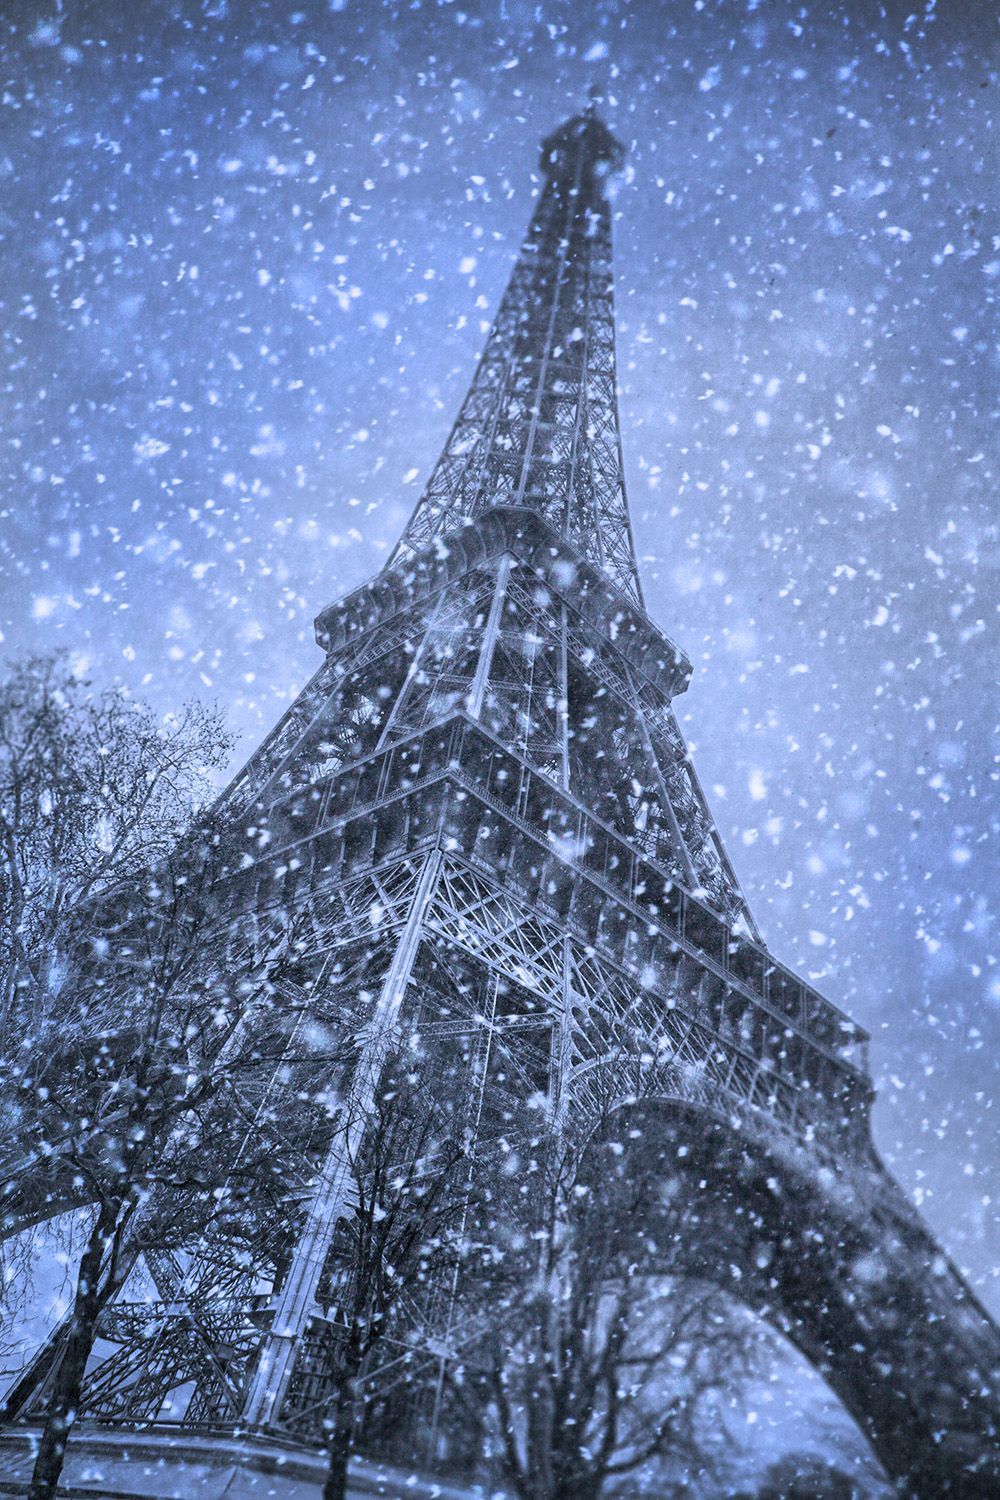 Rough Guides Blog. Travel Guide and Travel Information. Paris winter, Paris picture, Tour eiffel